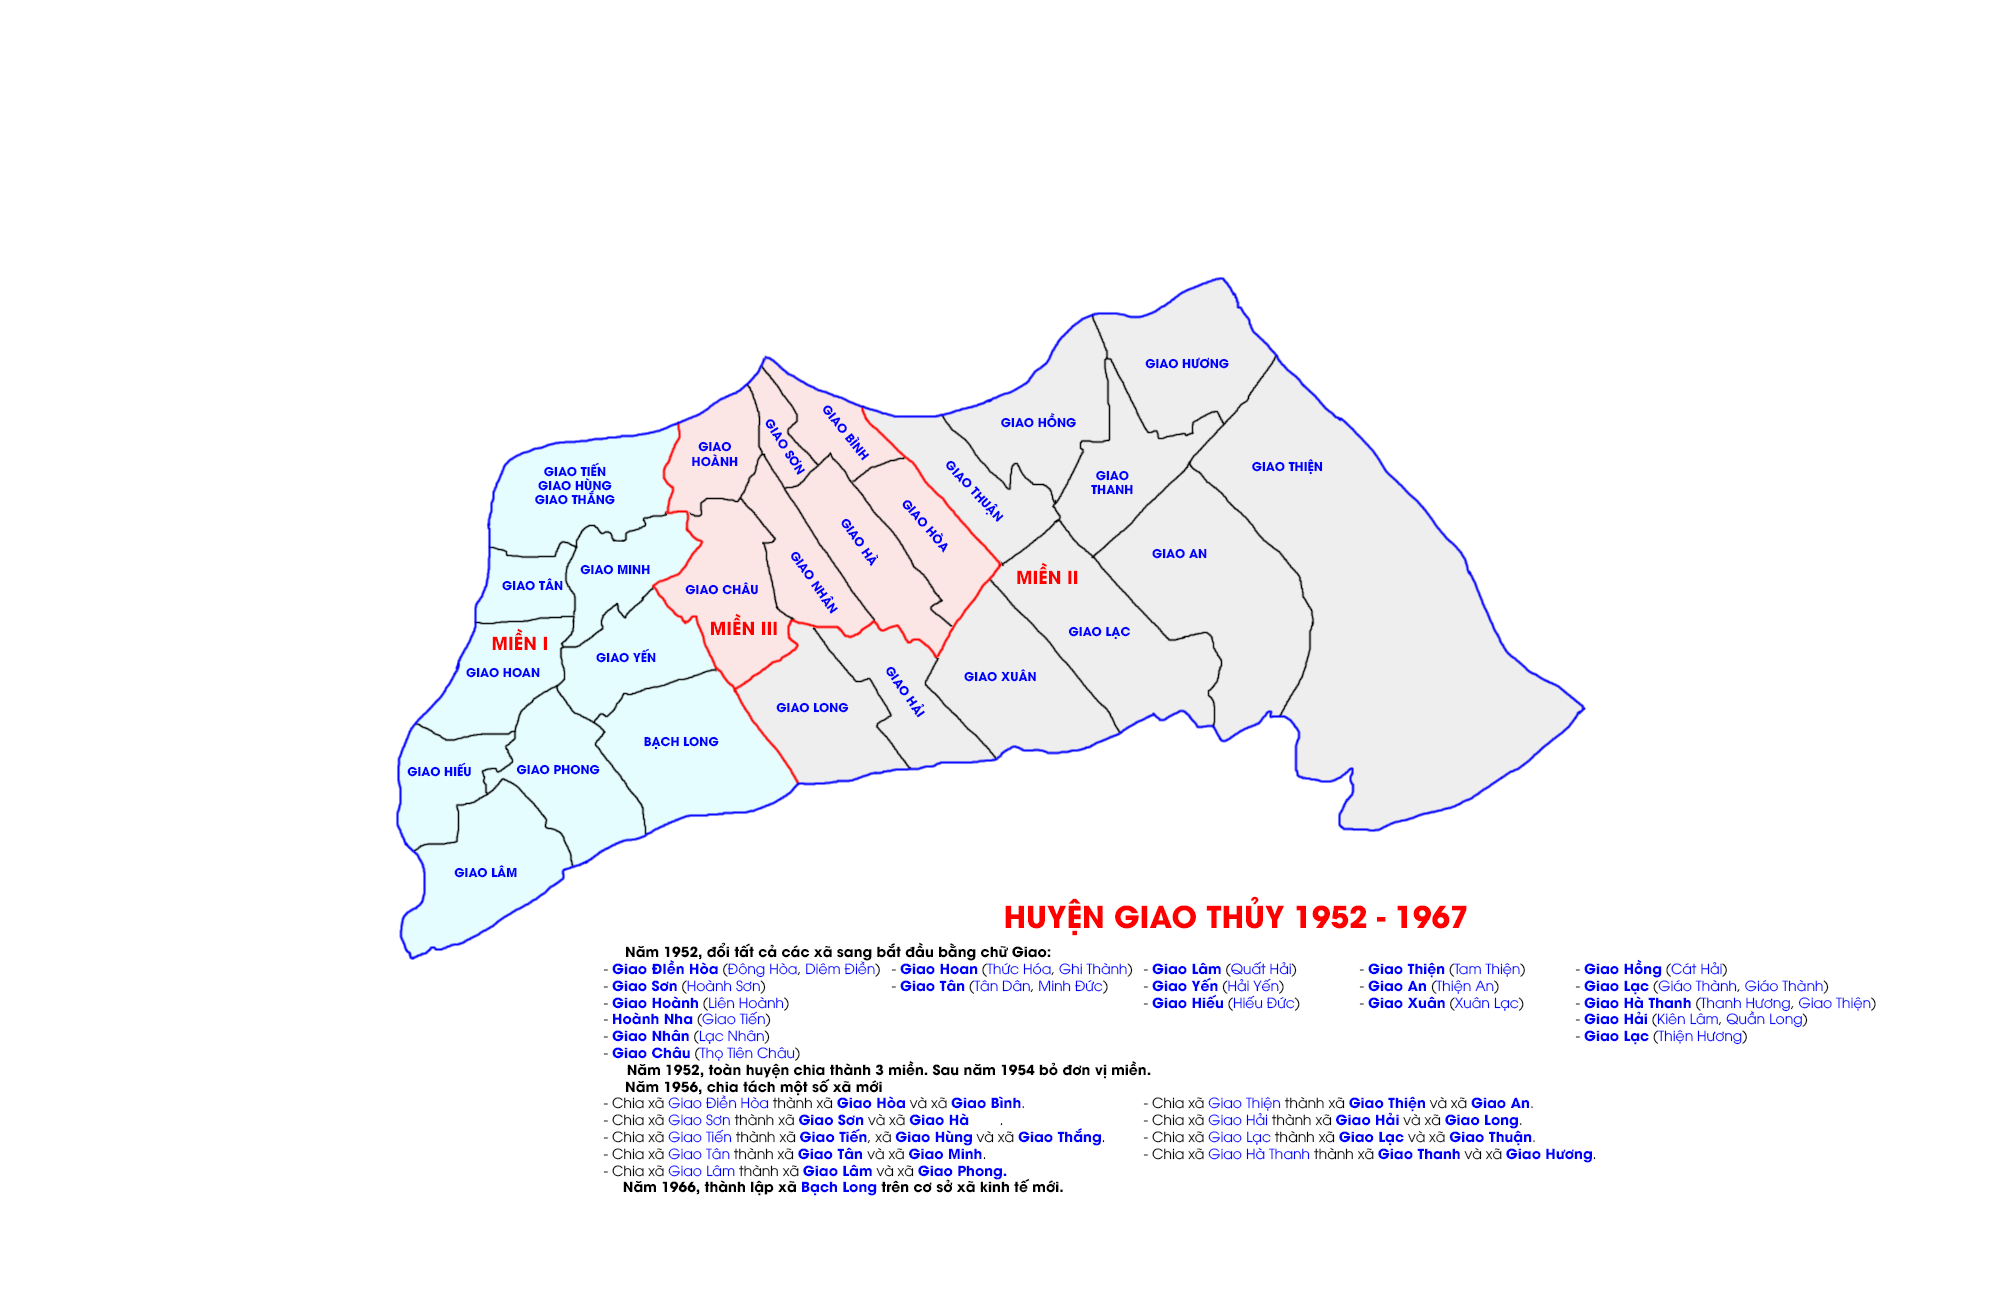 Hành chính huyện Giao Thủy từ sau cải cách ruộng đất đến năm 1975